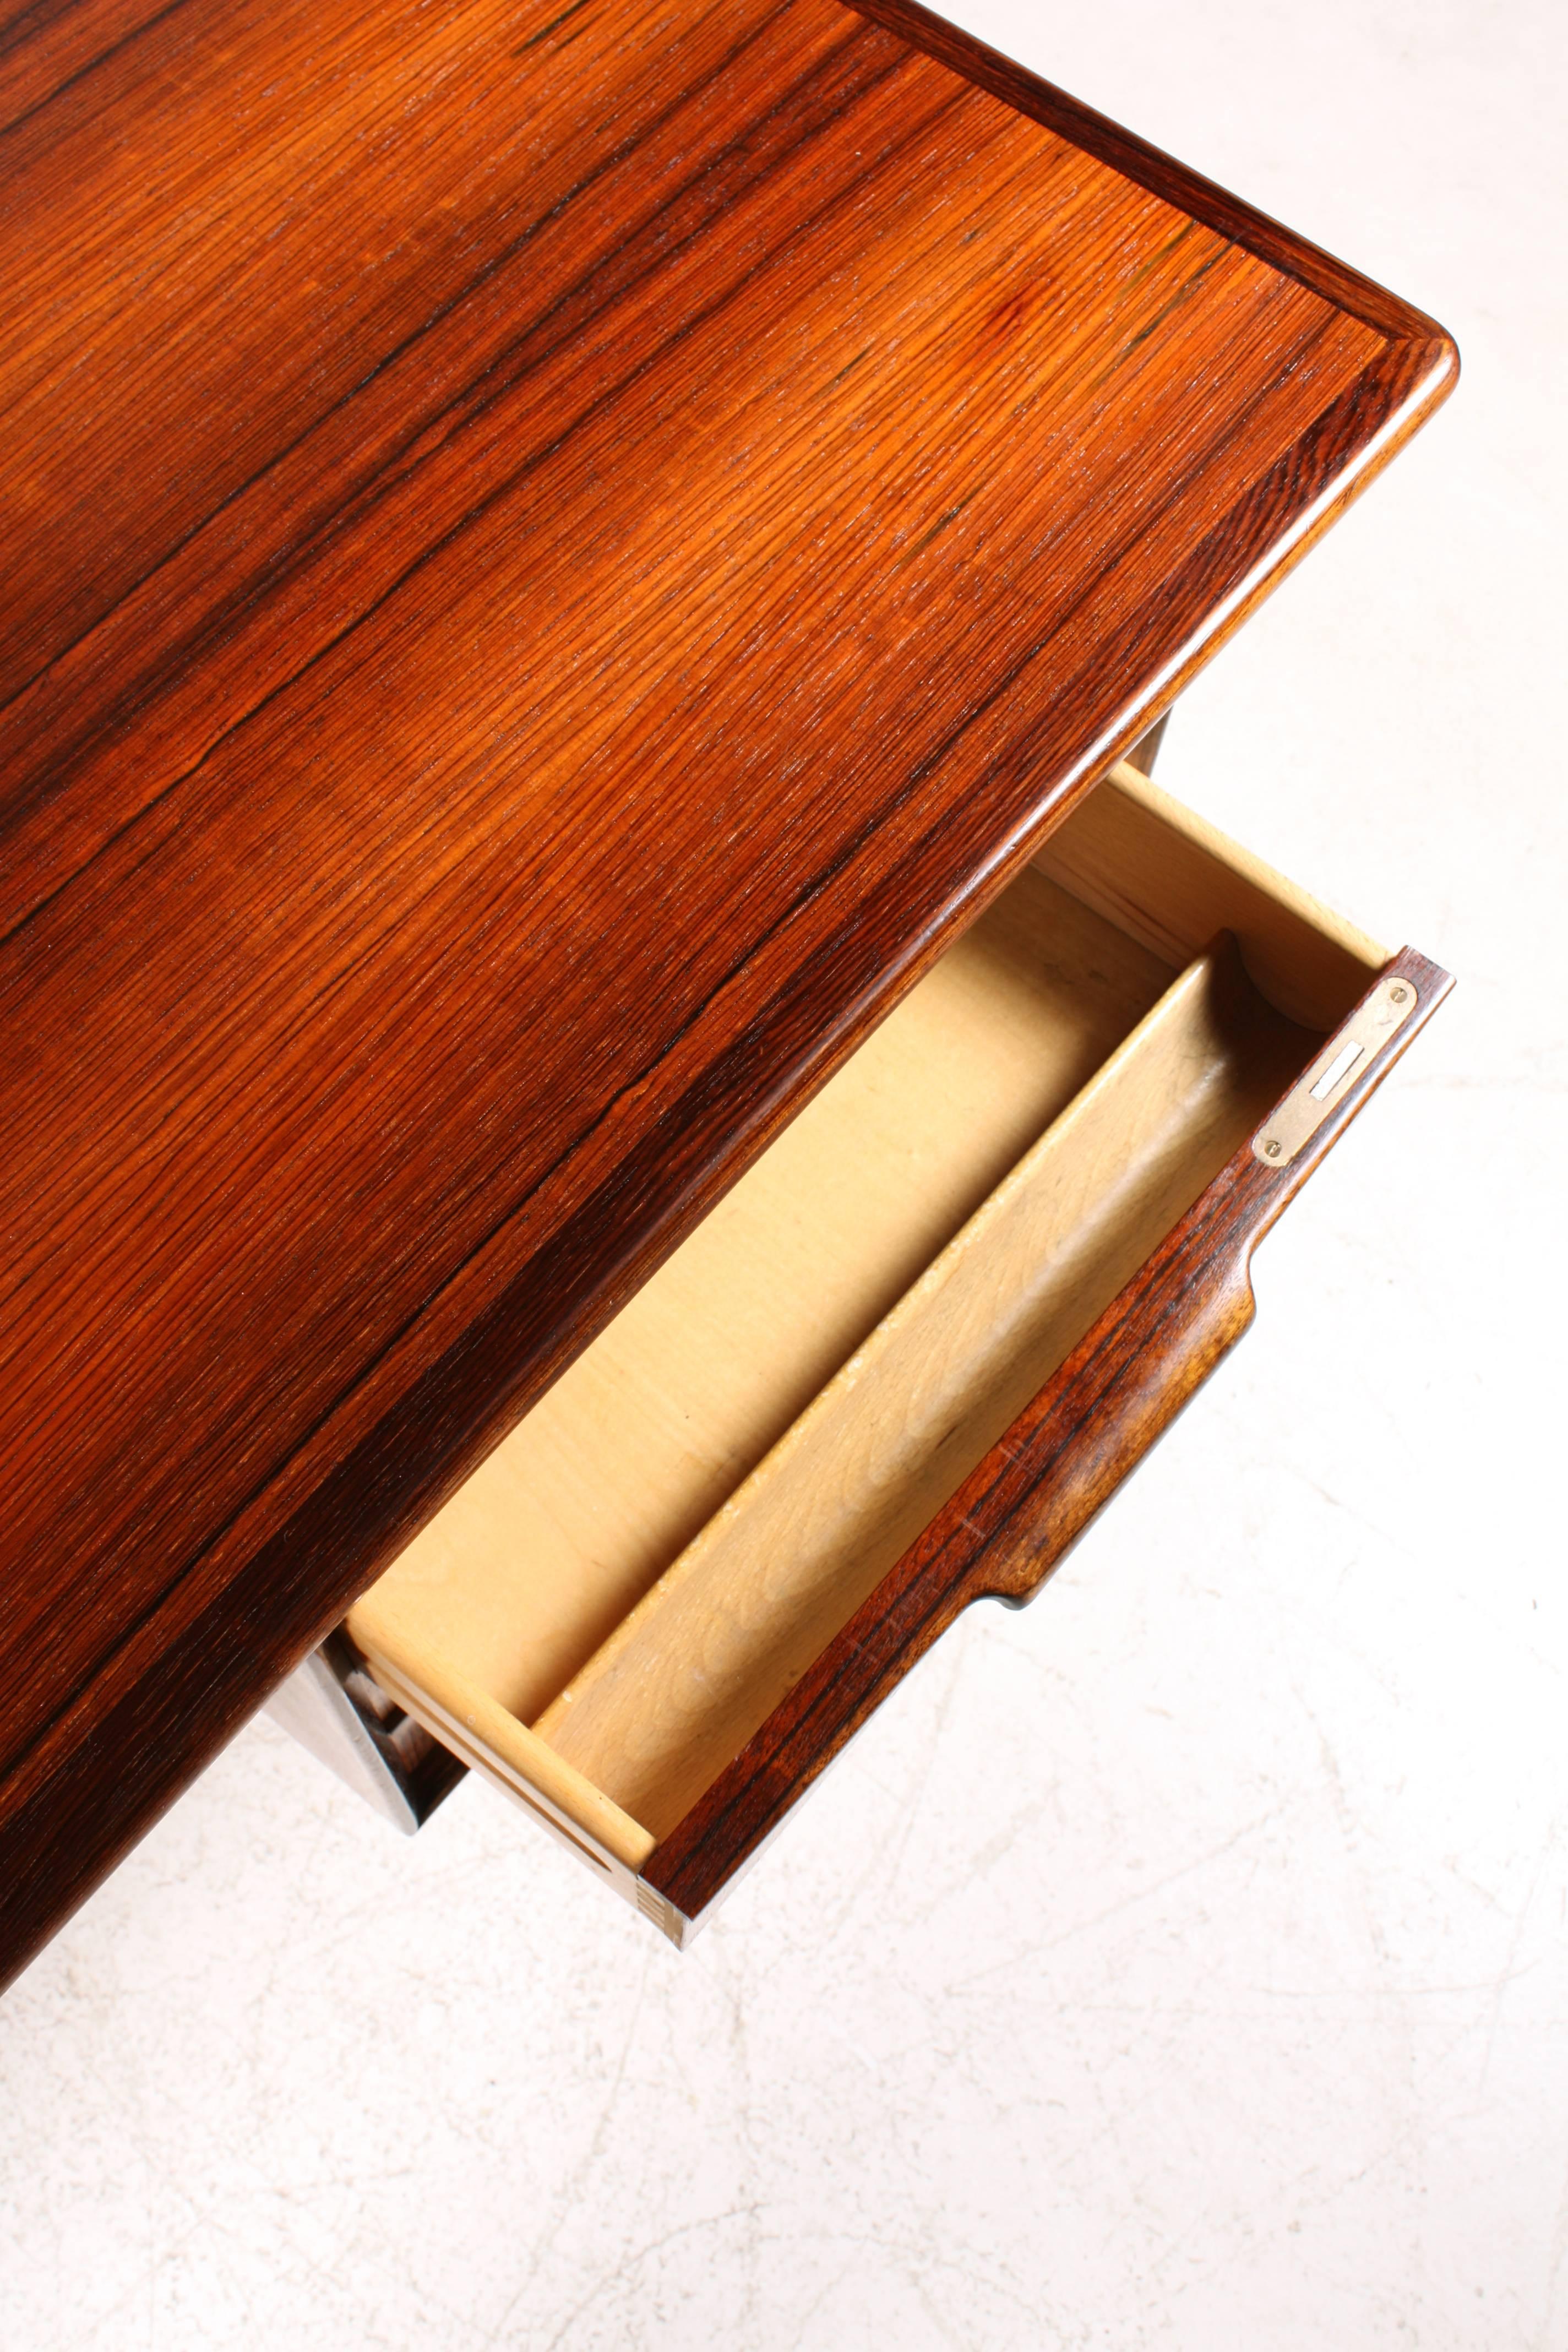 Oman Jun Schreibtisch aus Palisanderholz 1